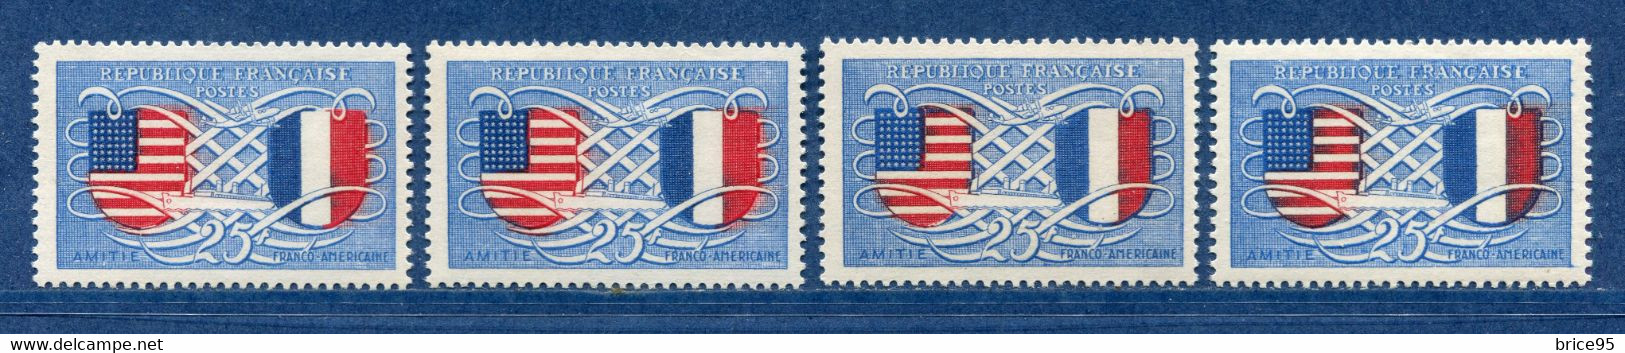 ⭐ France - Variété - YT N° 840 - Couleurs - Pétouille - Neuf Sans Charnière - 1949 ⭐ - Nuovi